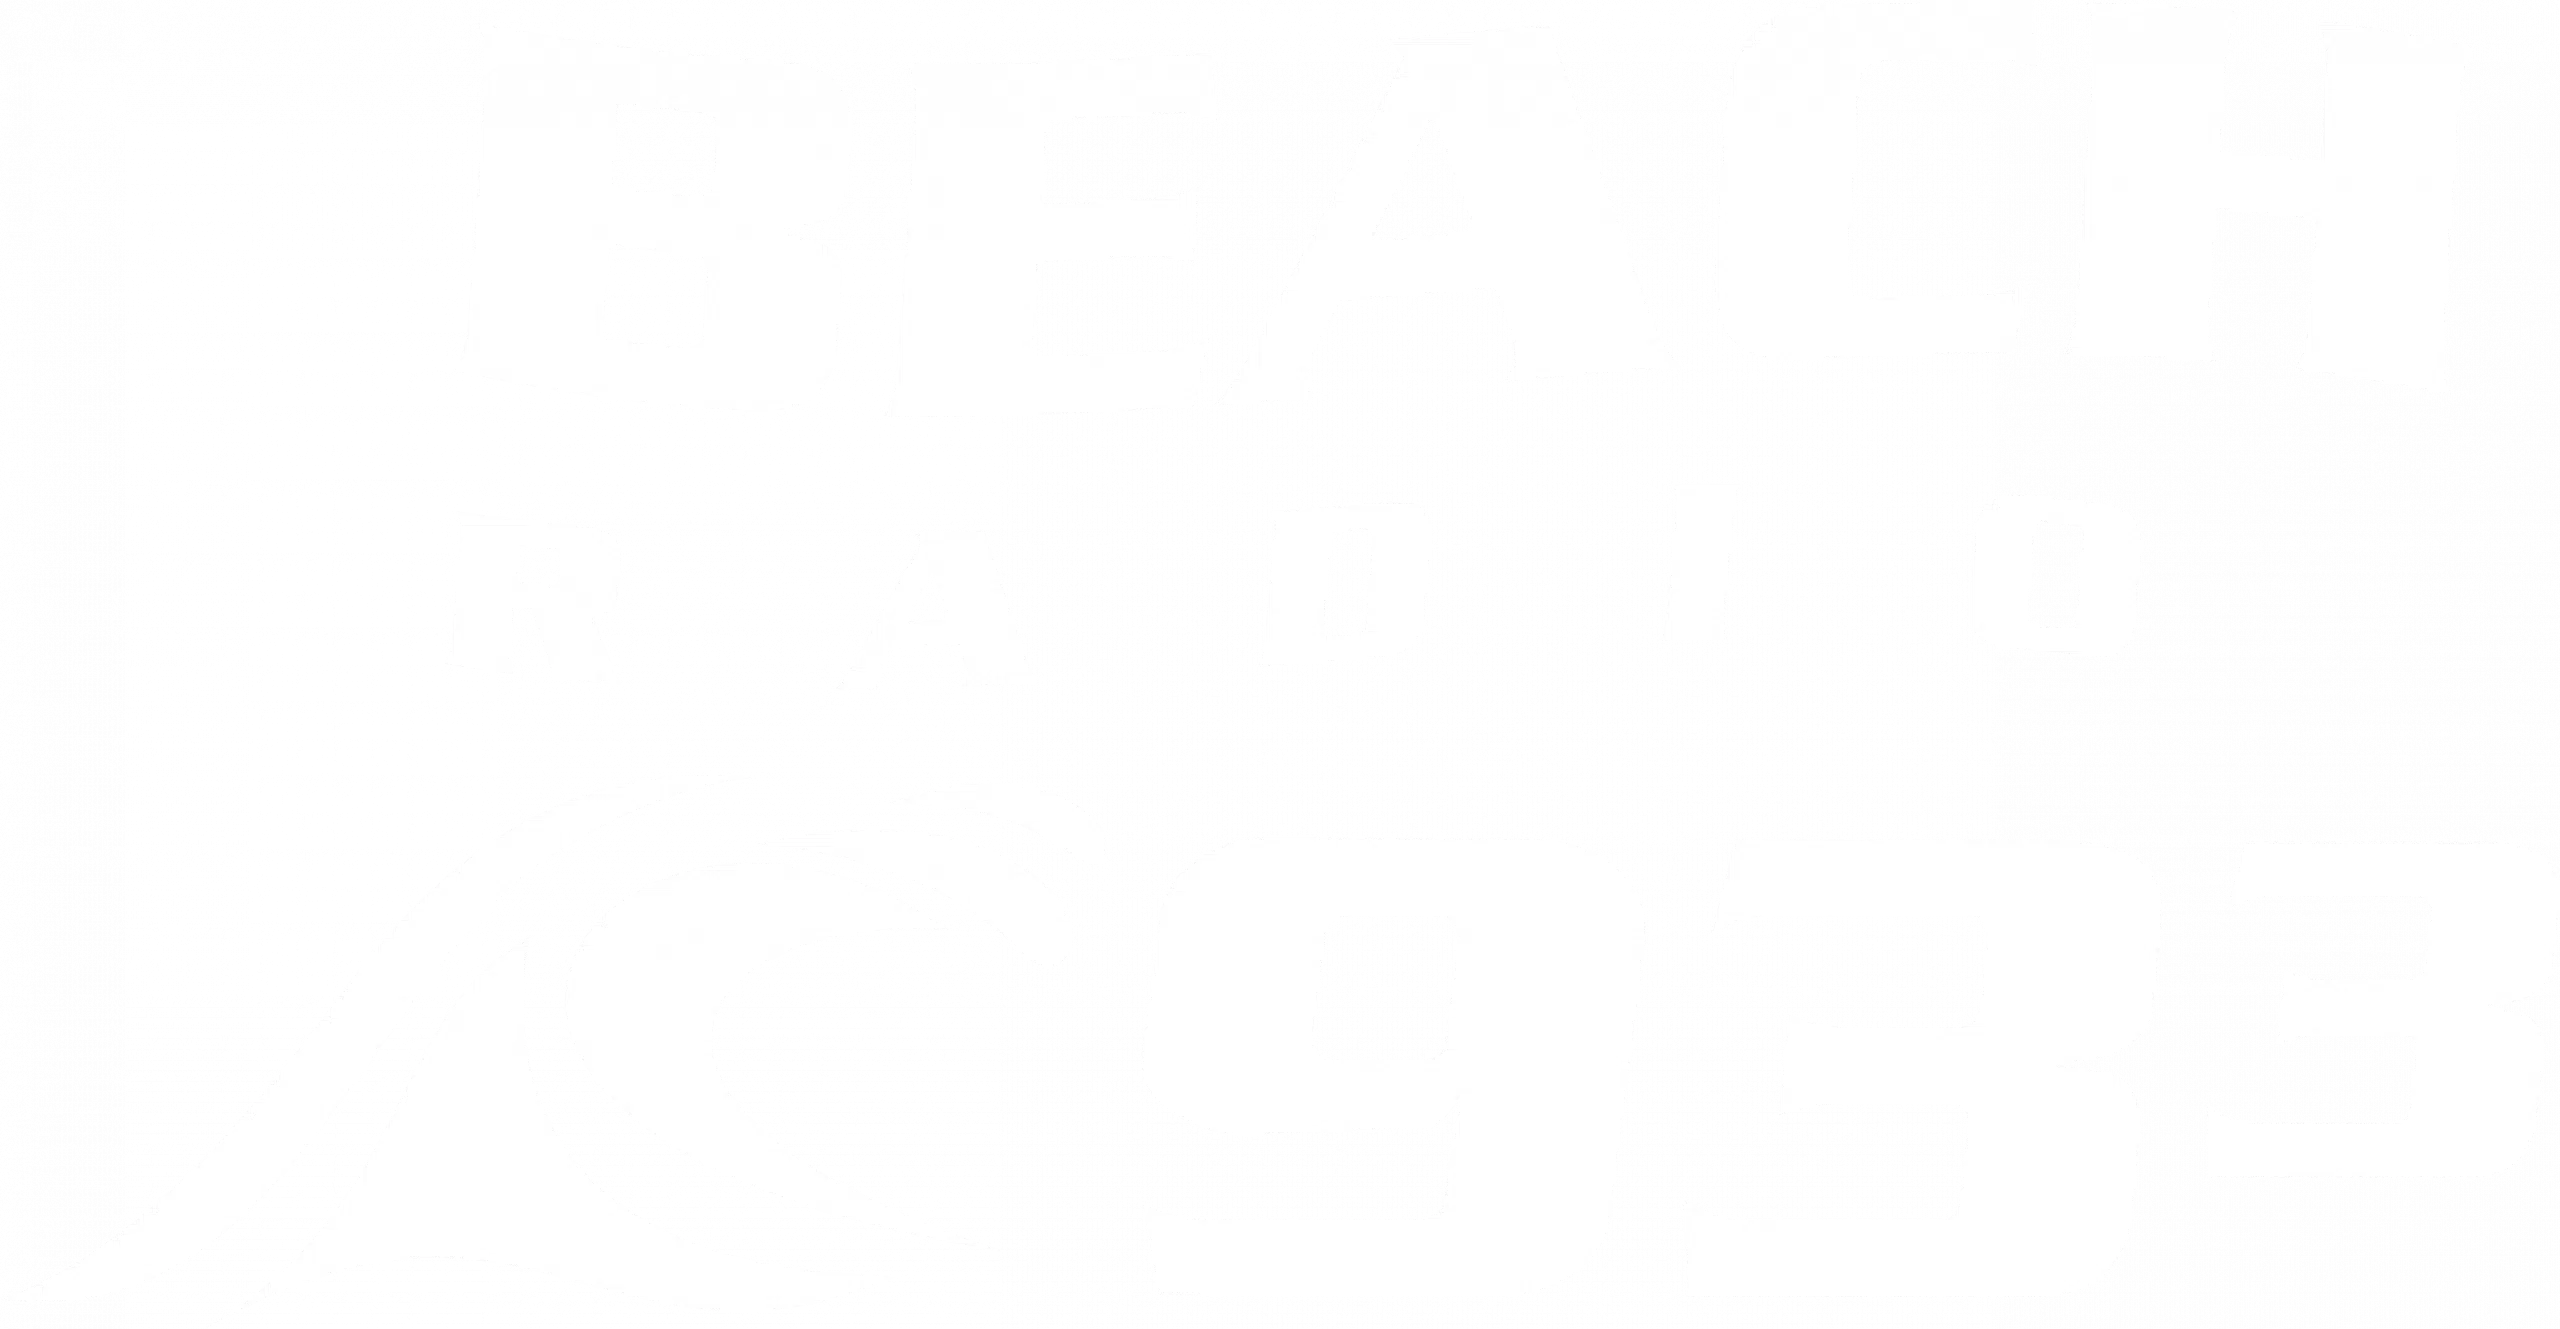 933beachradio.ca